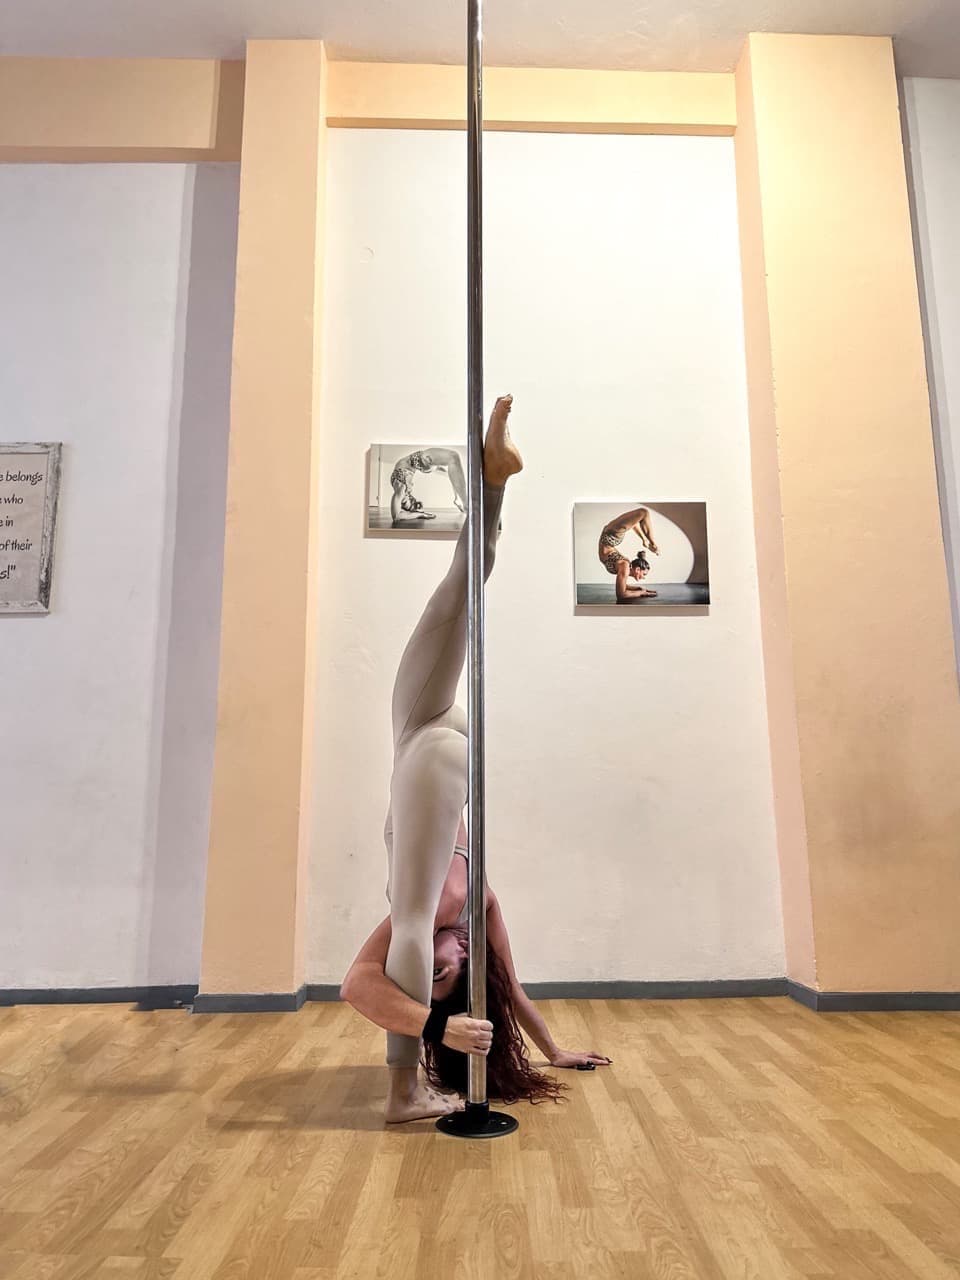 gk-pole-acrofitness-studio-kallithea-flexibility-sportshunter-1